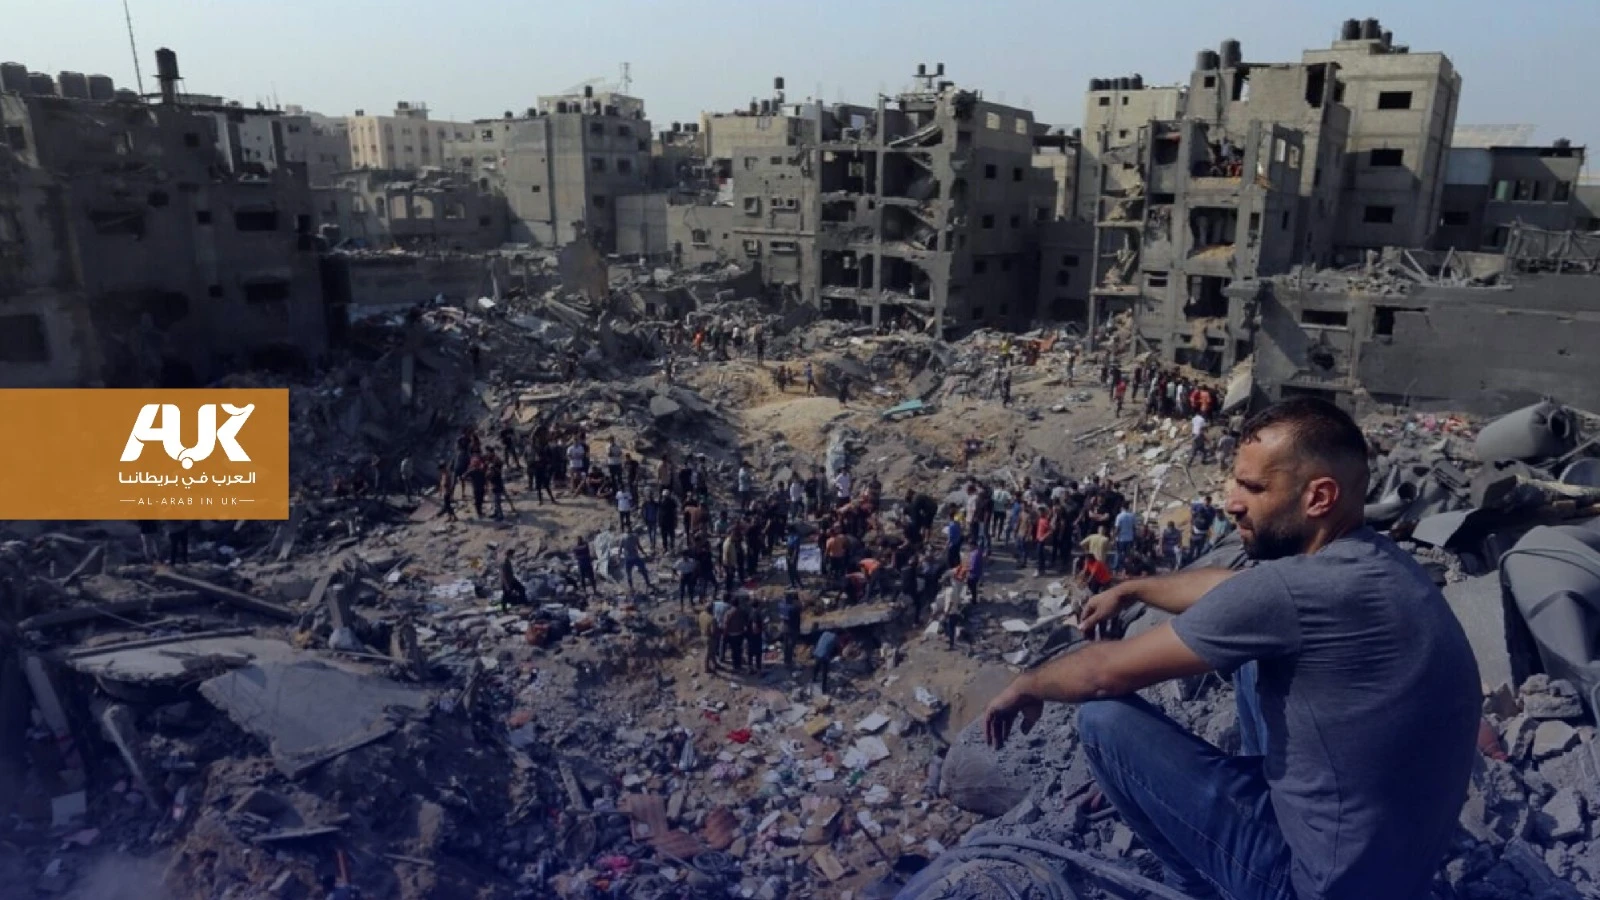 المخابرات البريطانية تتجسس على غزة لصالح إسرائيل